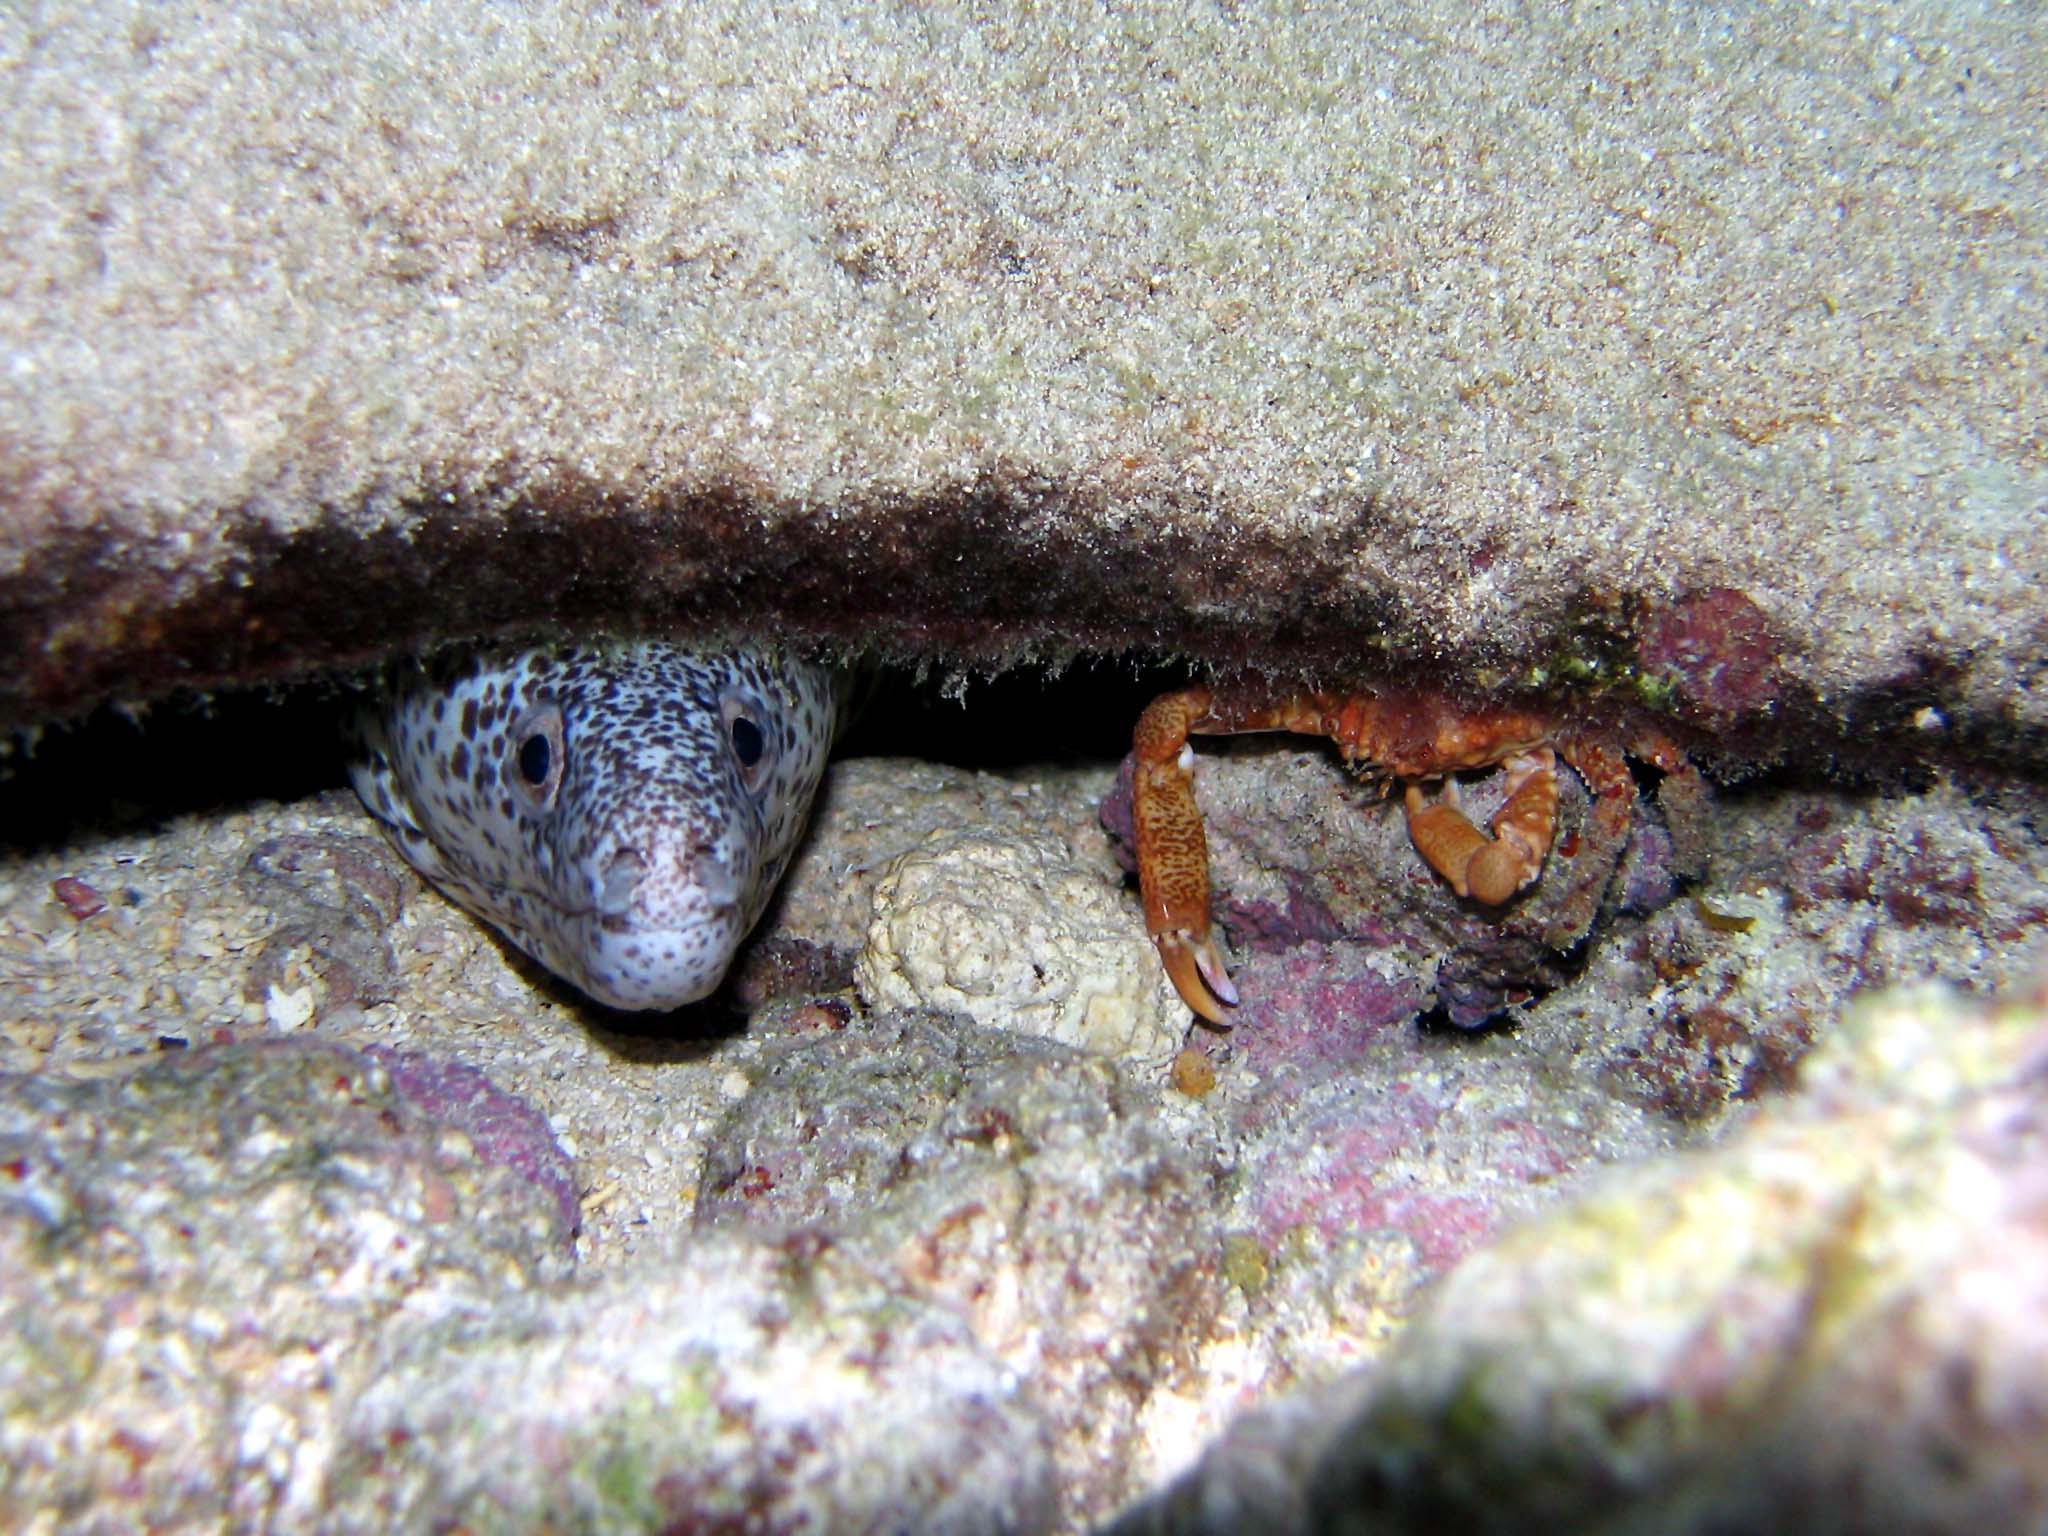 Moray and Crab